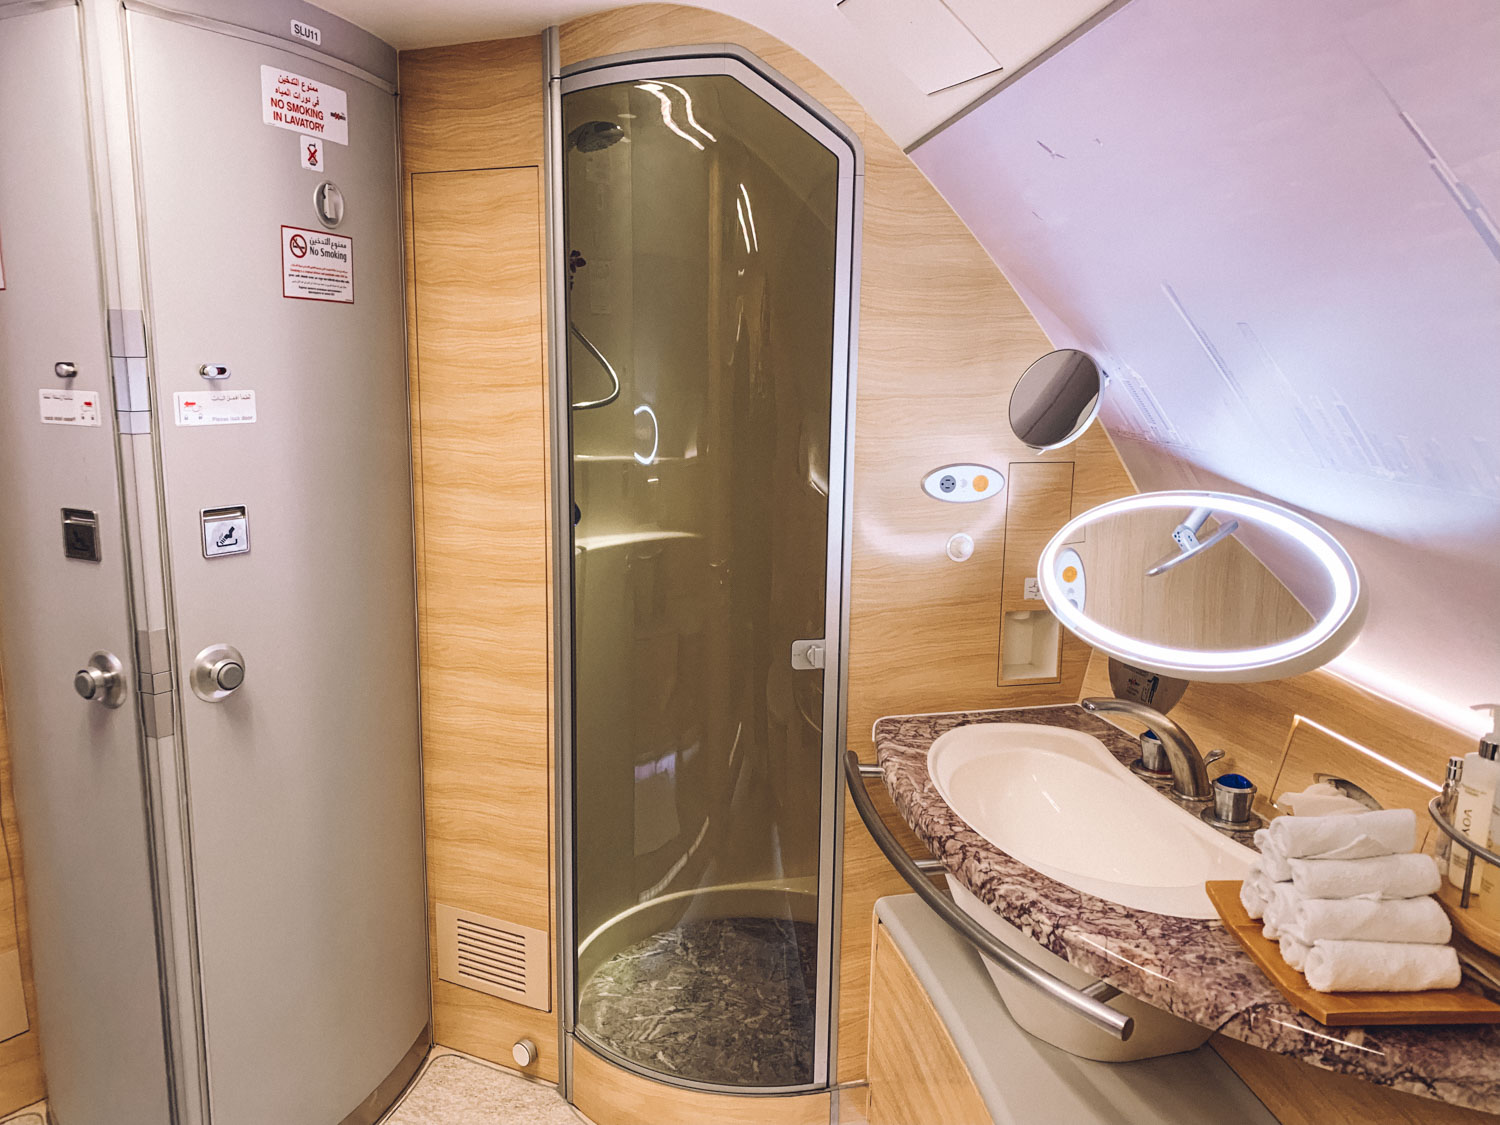 Emirates Dubai First Class Amenities Shower